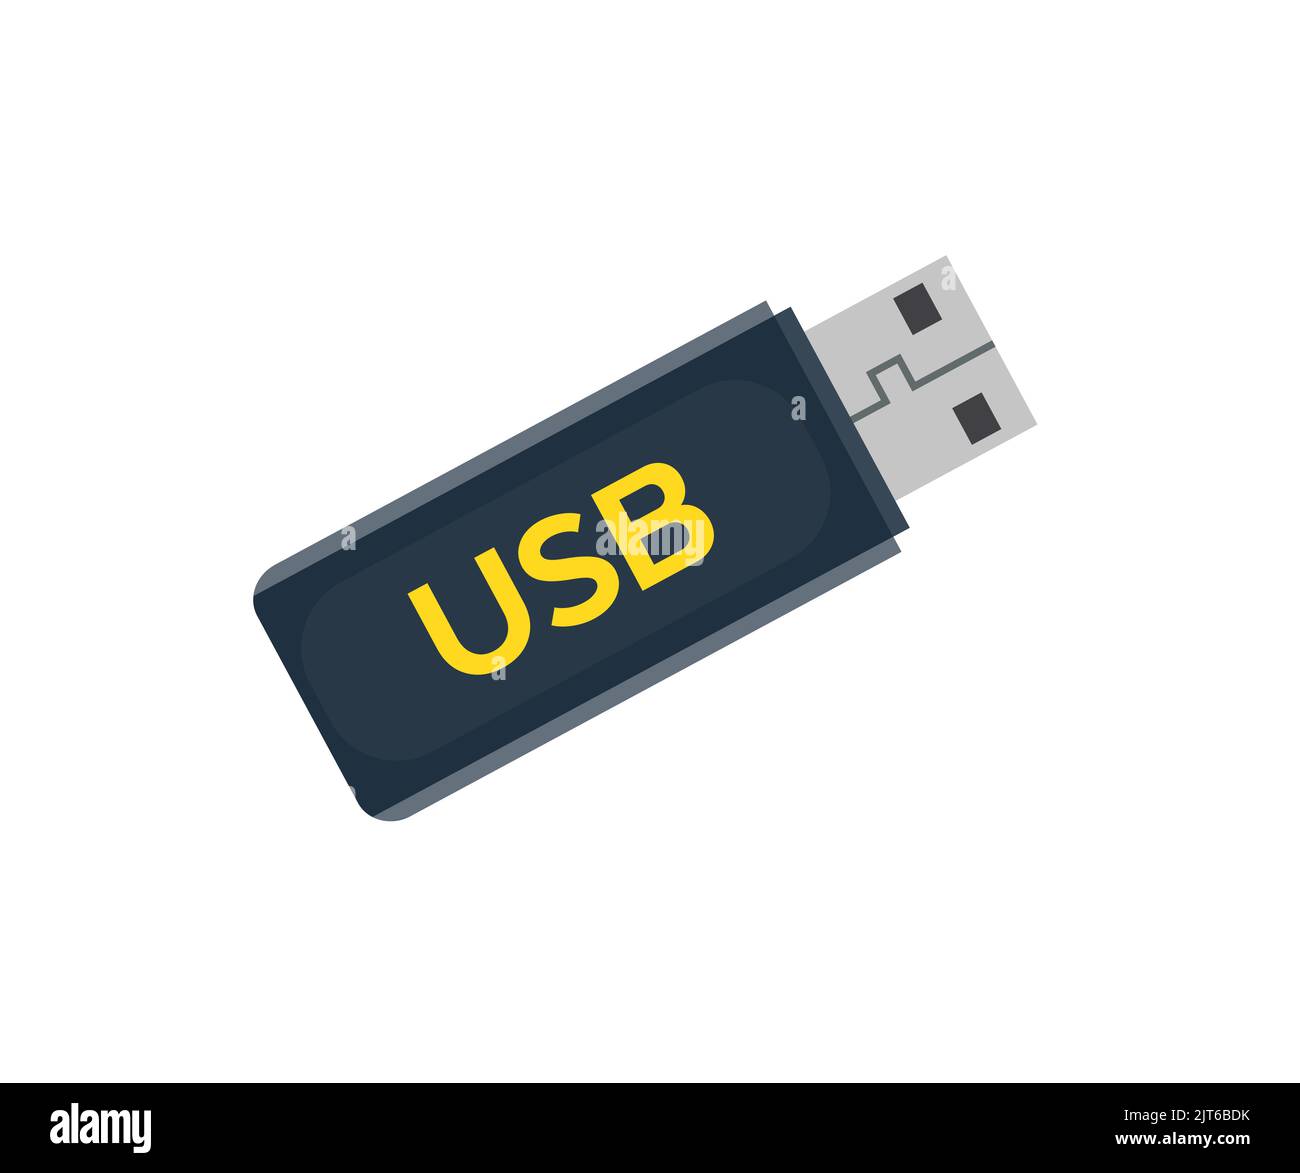 Clé USB, périphérique de stockage de données compact. Logo Memory StickTM. Concept de cybersécurité des informations personnelles. Clé USB et obsolète. Illustration de Vecteur